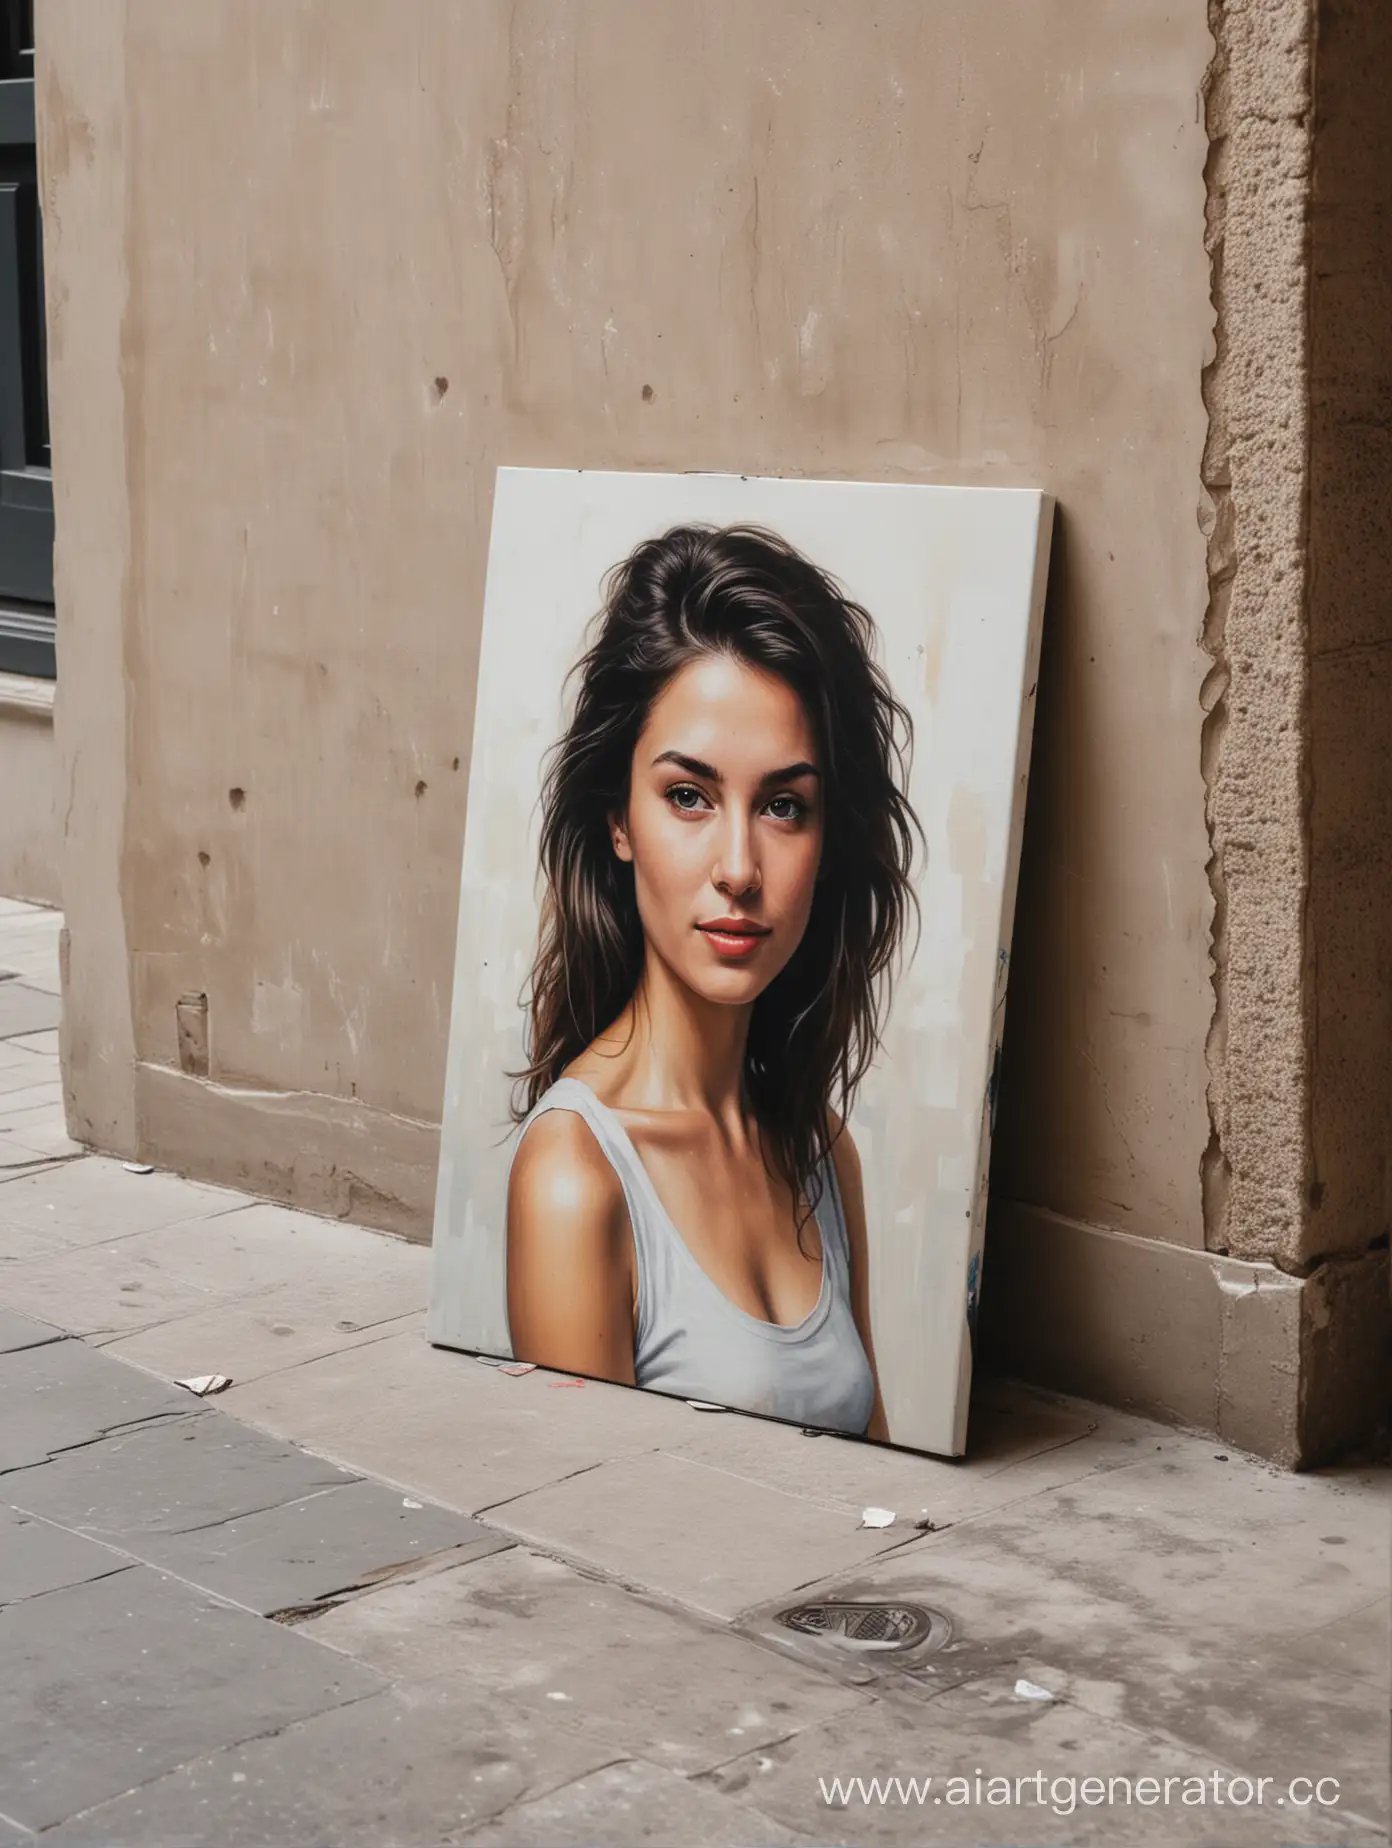 Портрет на холсте стоит на полу прислонившись к стене на улице